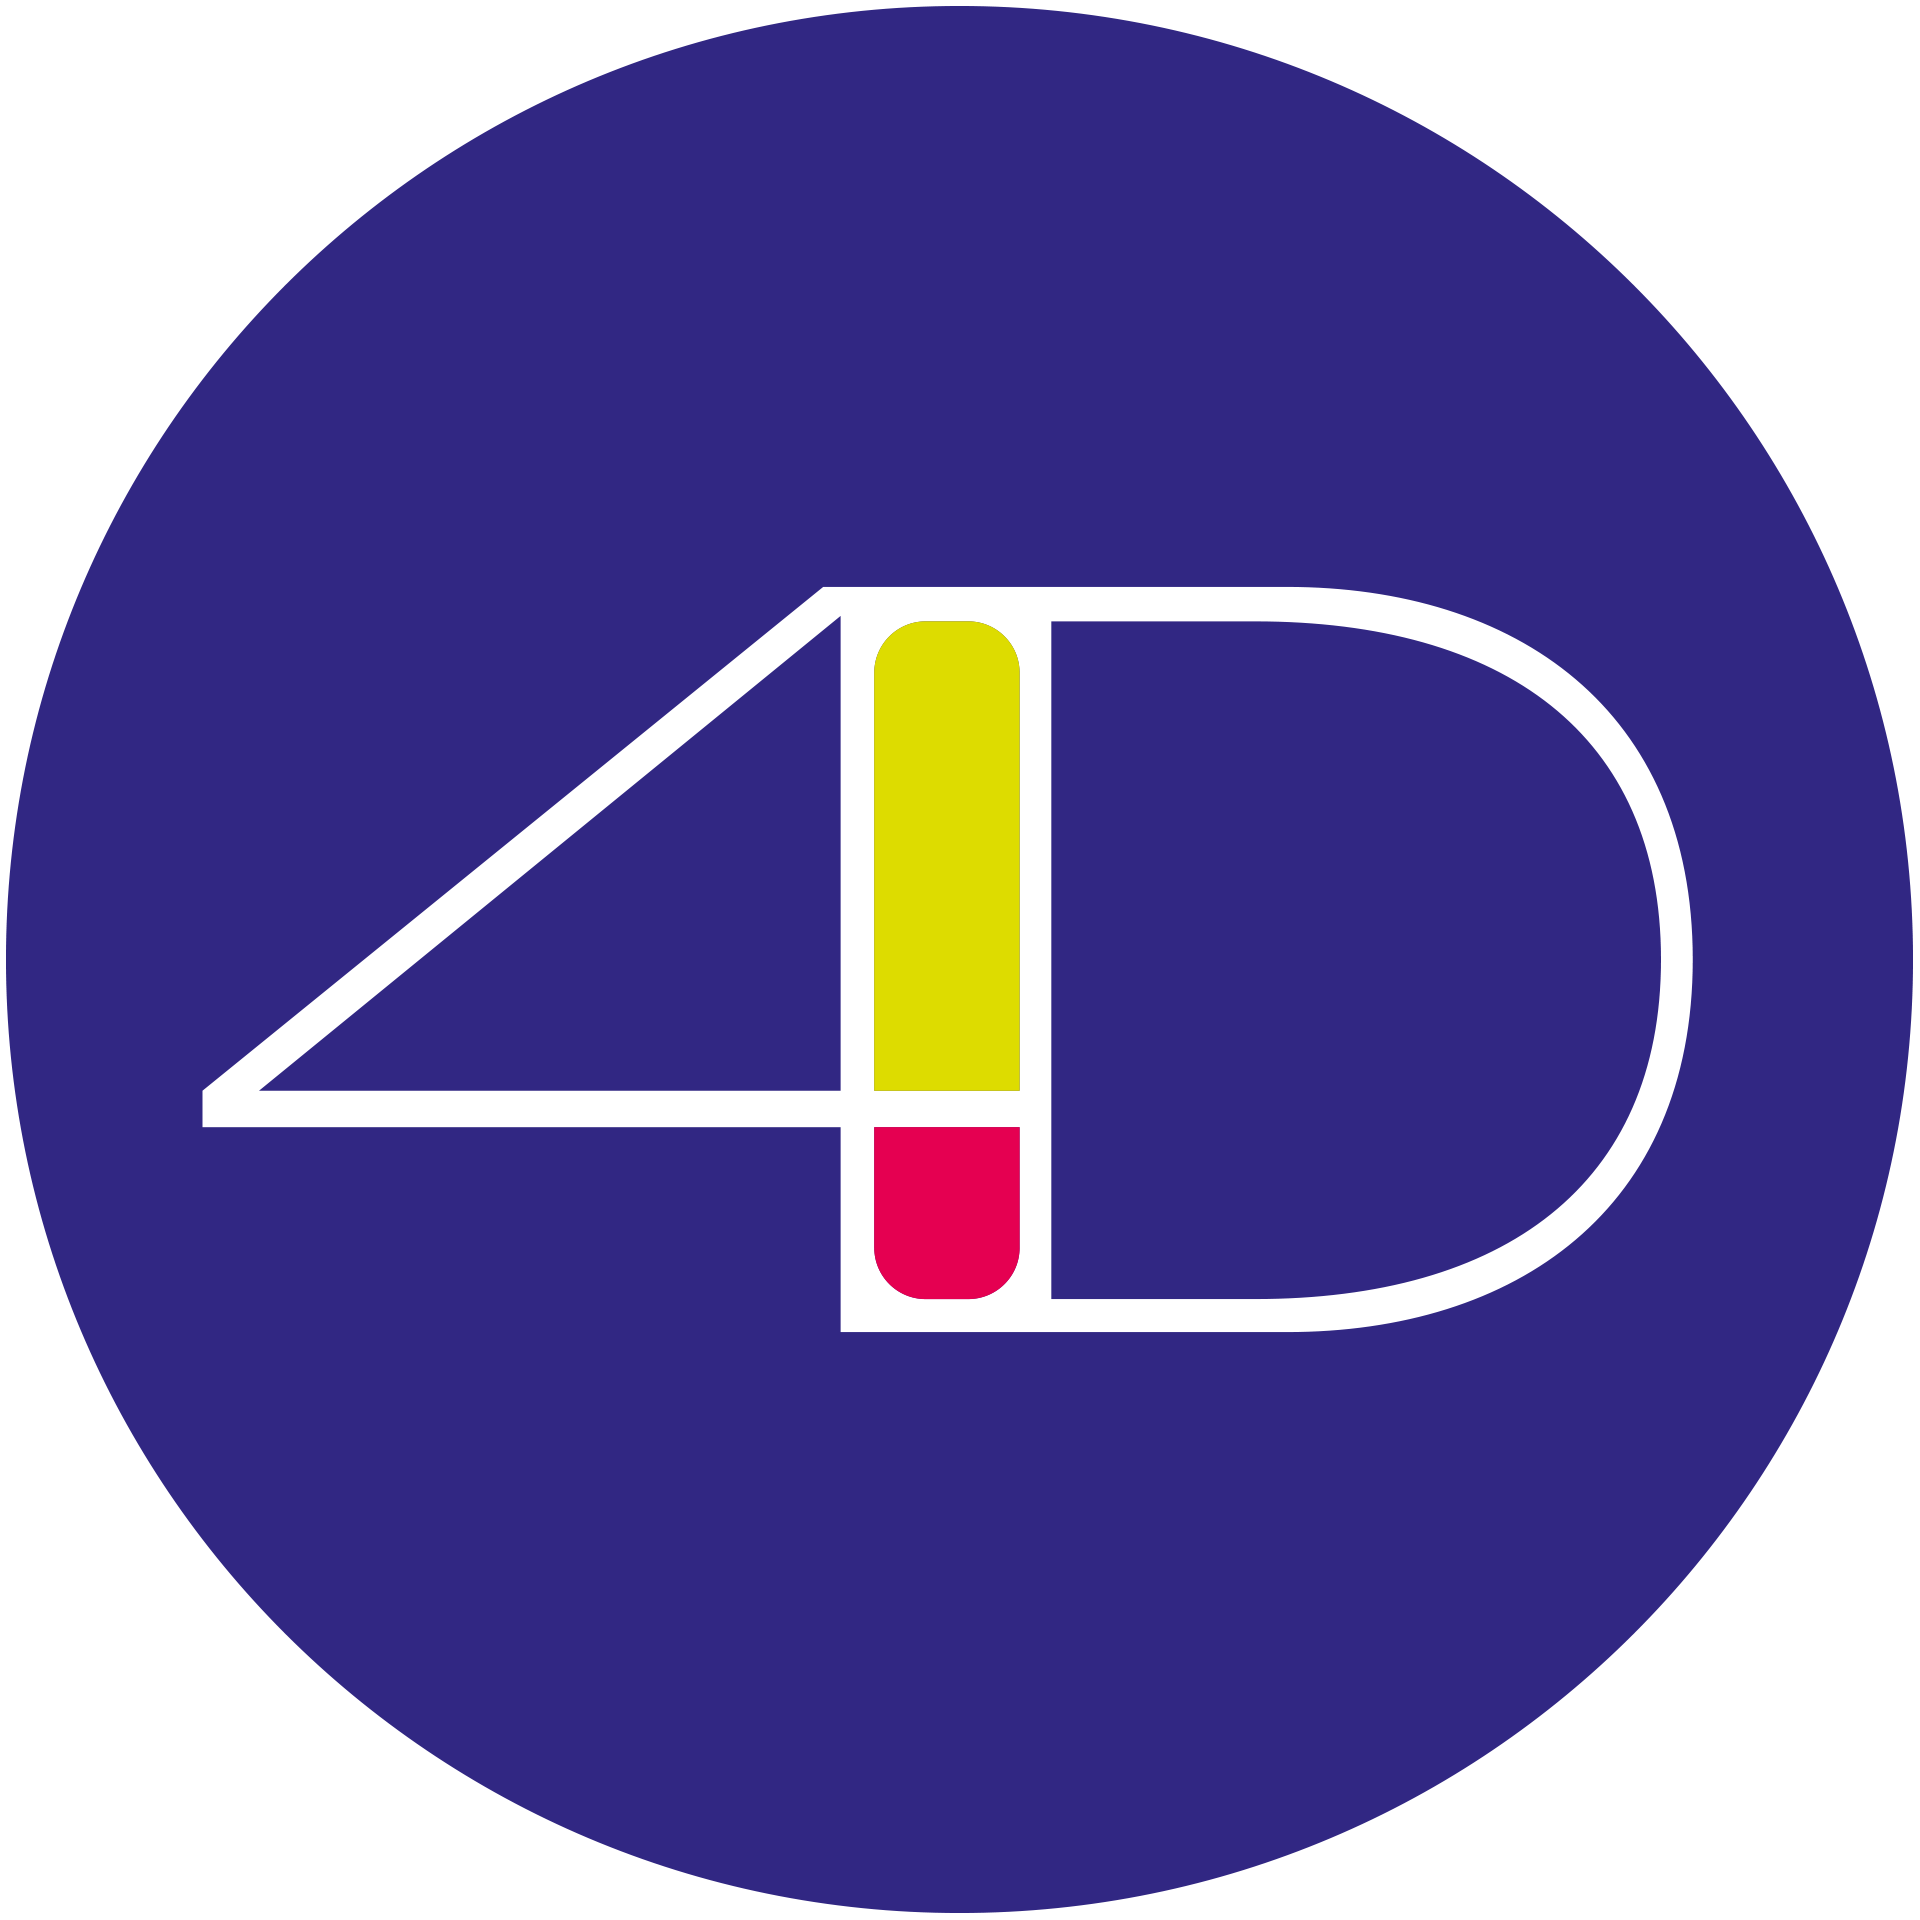 logo fondation Nature et decouvertes - LPO Occitanie délégation  territoriale Hérault